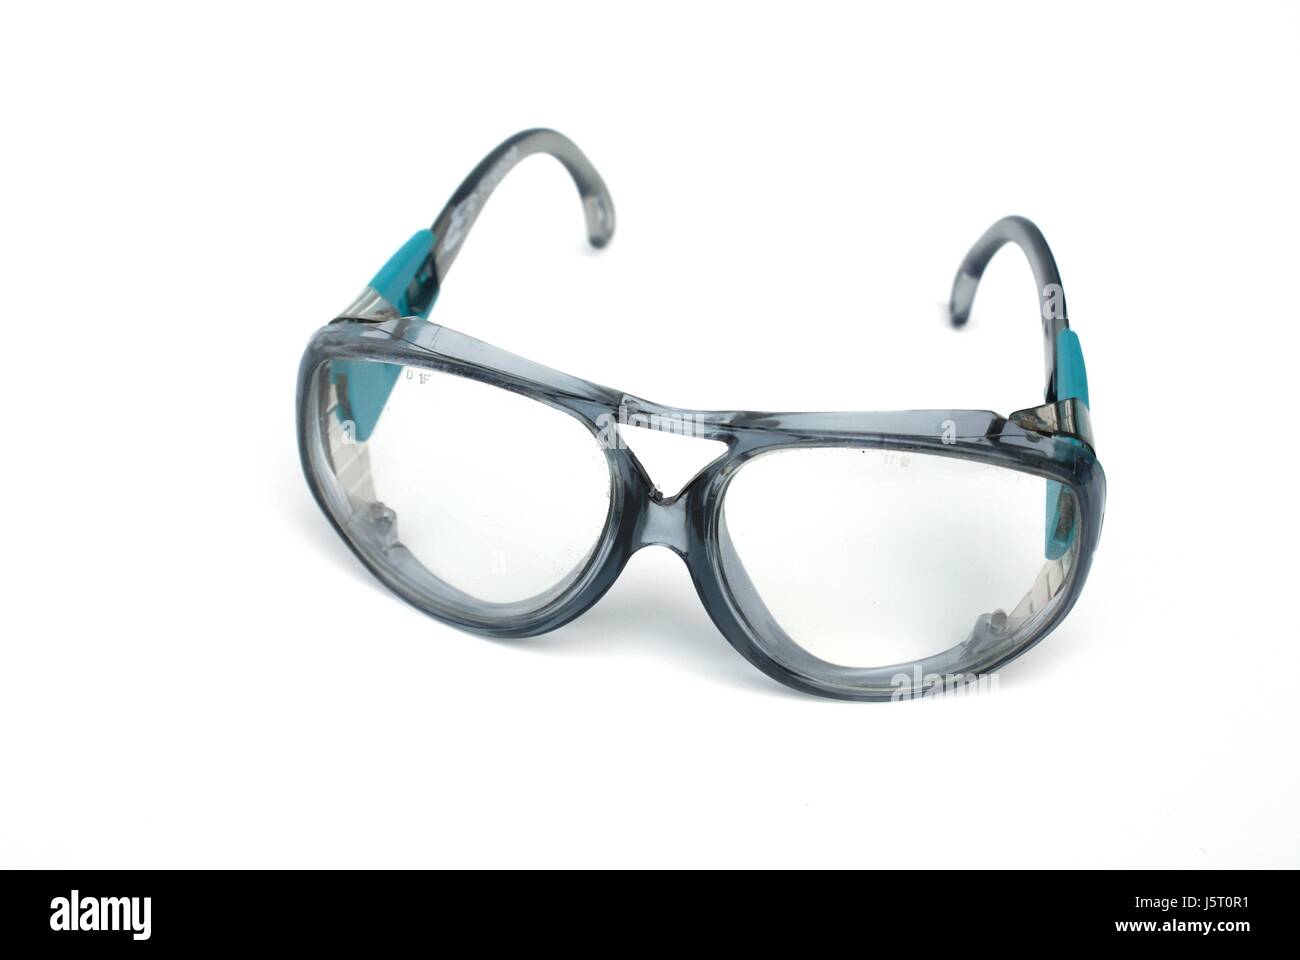 Brille Brille Brille Auge Orgel Augen, die Brille sehen mit einem Blick finden Sie unter Anzeigen Stockfoto